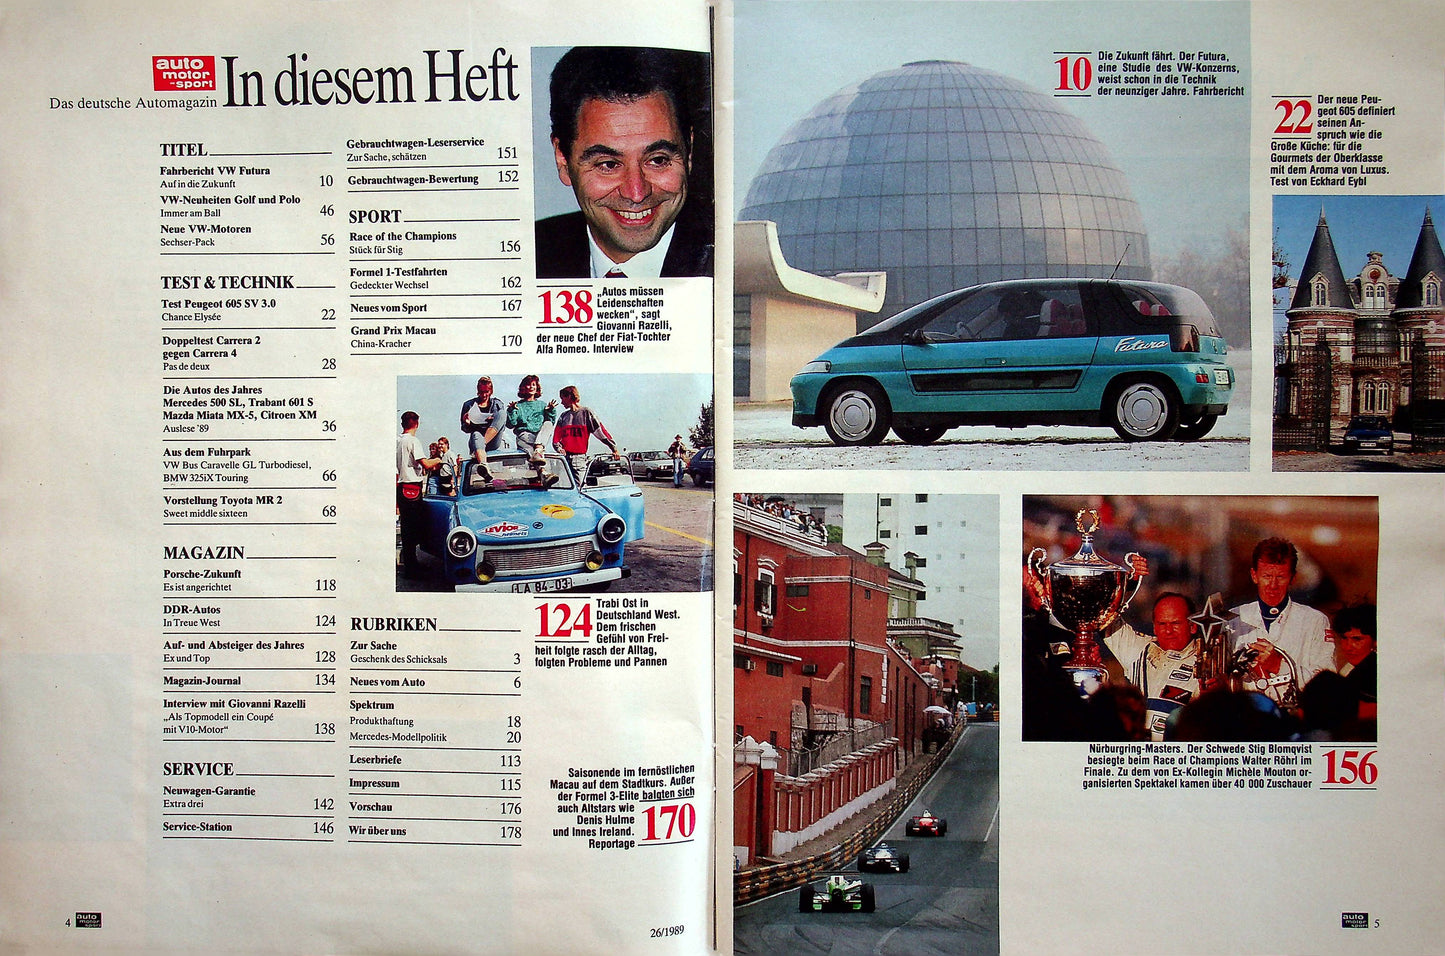 Auto Motor und Sport 26/1989